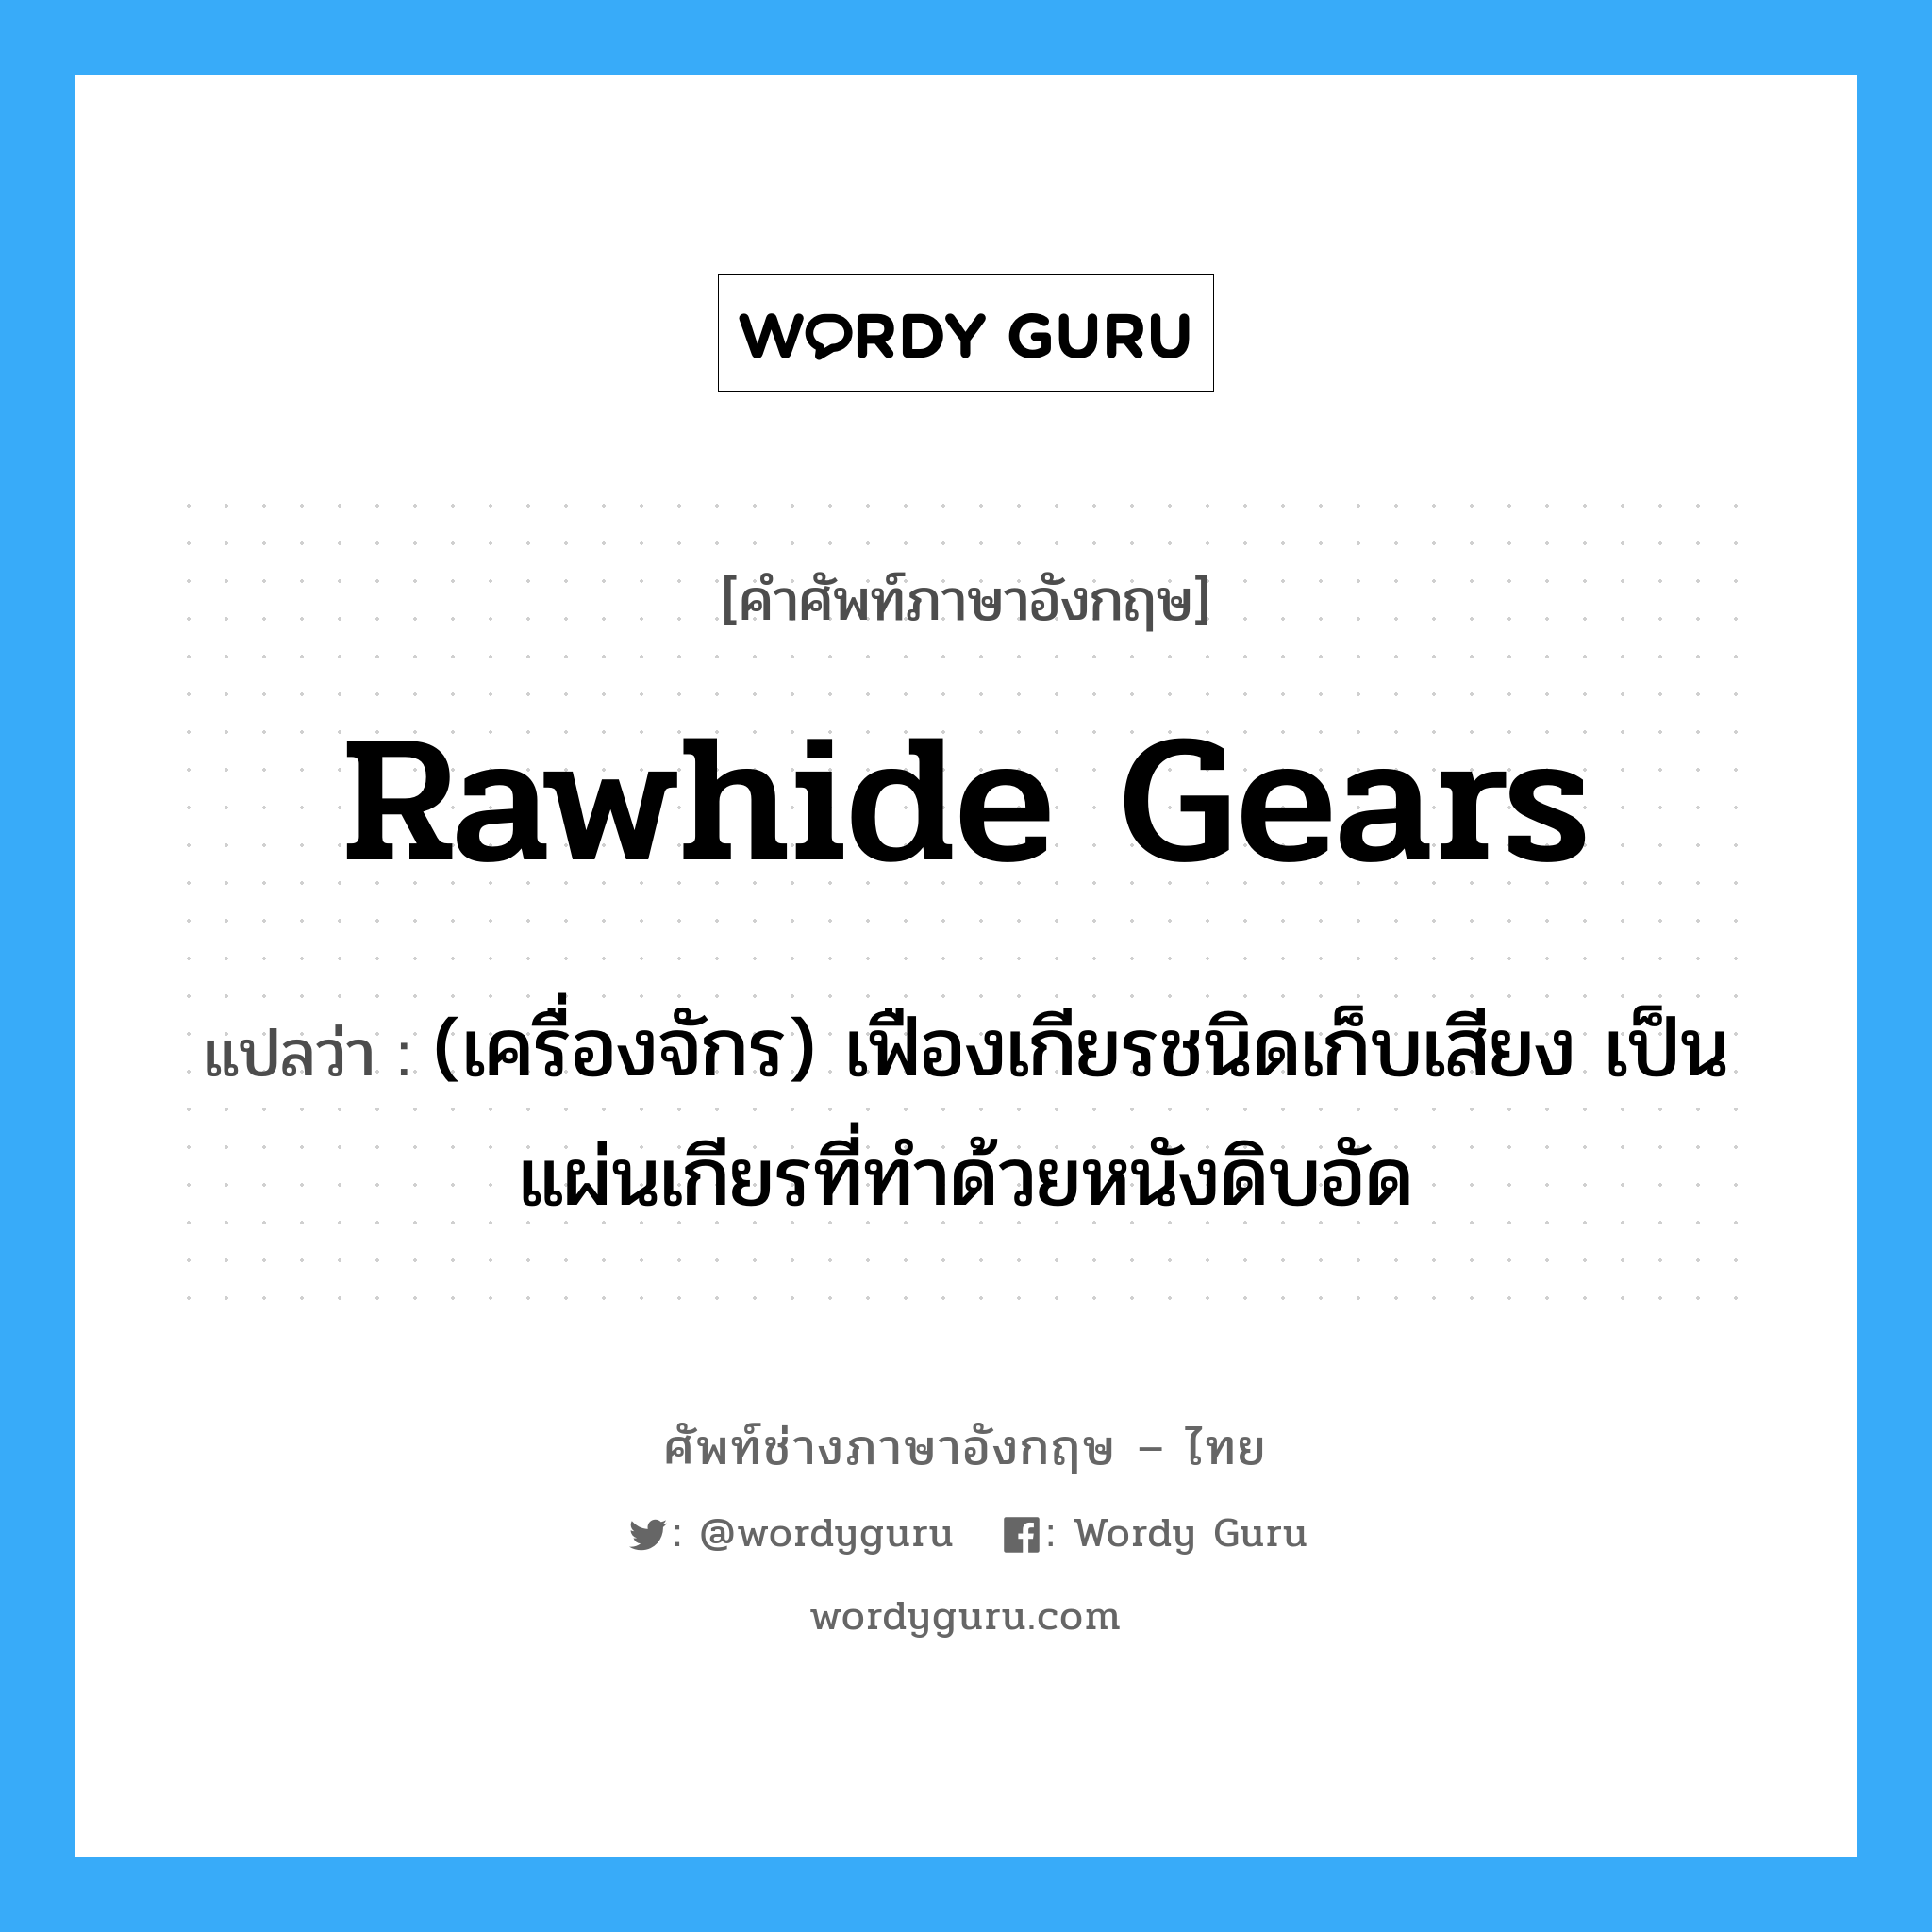 rawhide gears แปลว่า?, คำศัพท์ช่างภาษาอังกฤษ - ไทย rawhide gears คำศัพท์ภาษาอังกฤษ rawhide gears แปลว่า (เครื่องจักร) เฟืองเกียรชนิดเก็บเสียง เป็นแผ่นเกียรที่ทำด้วยหนังดิบอัด